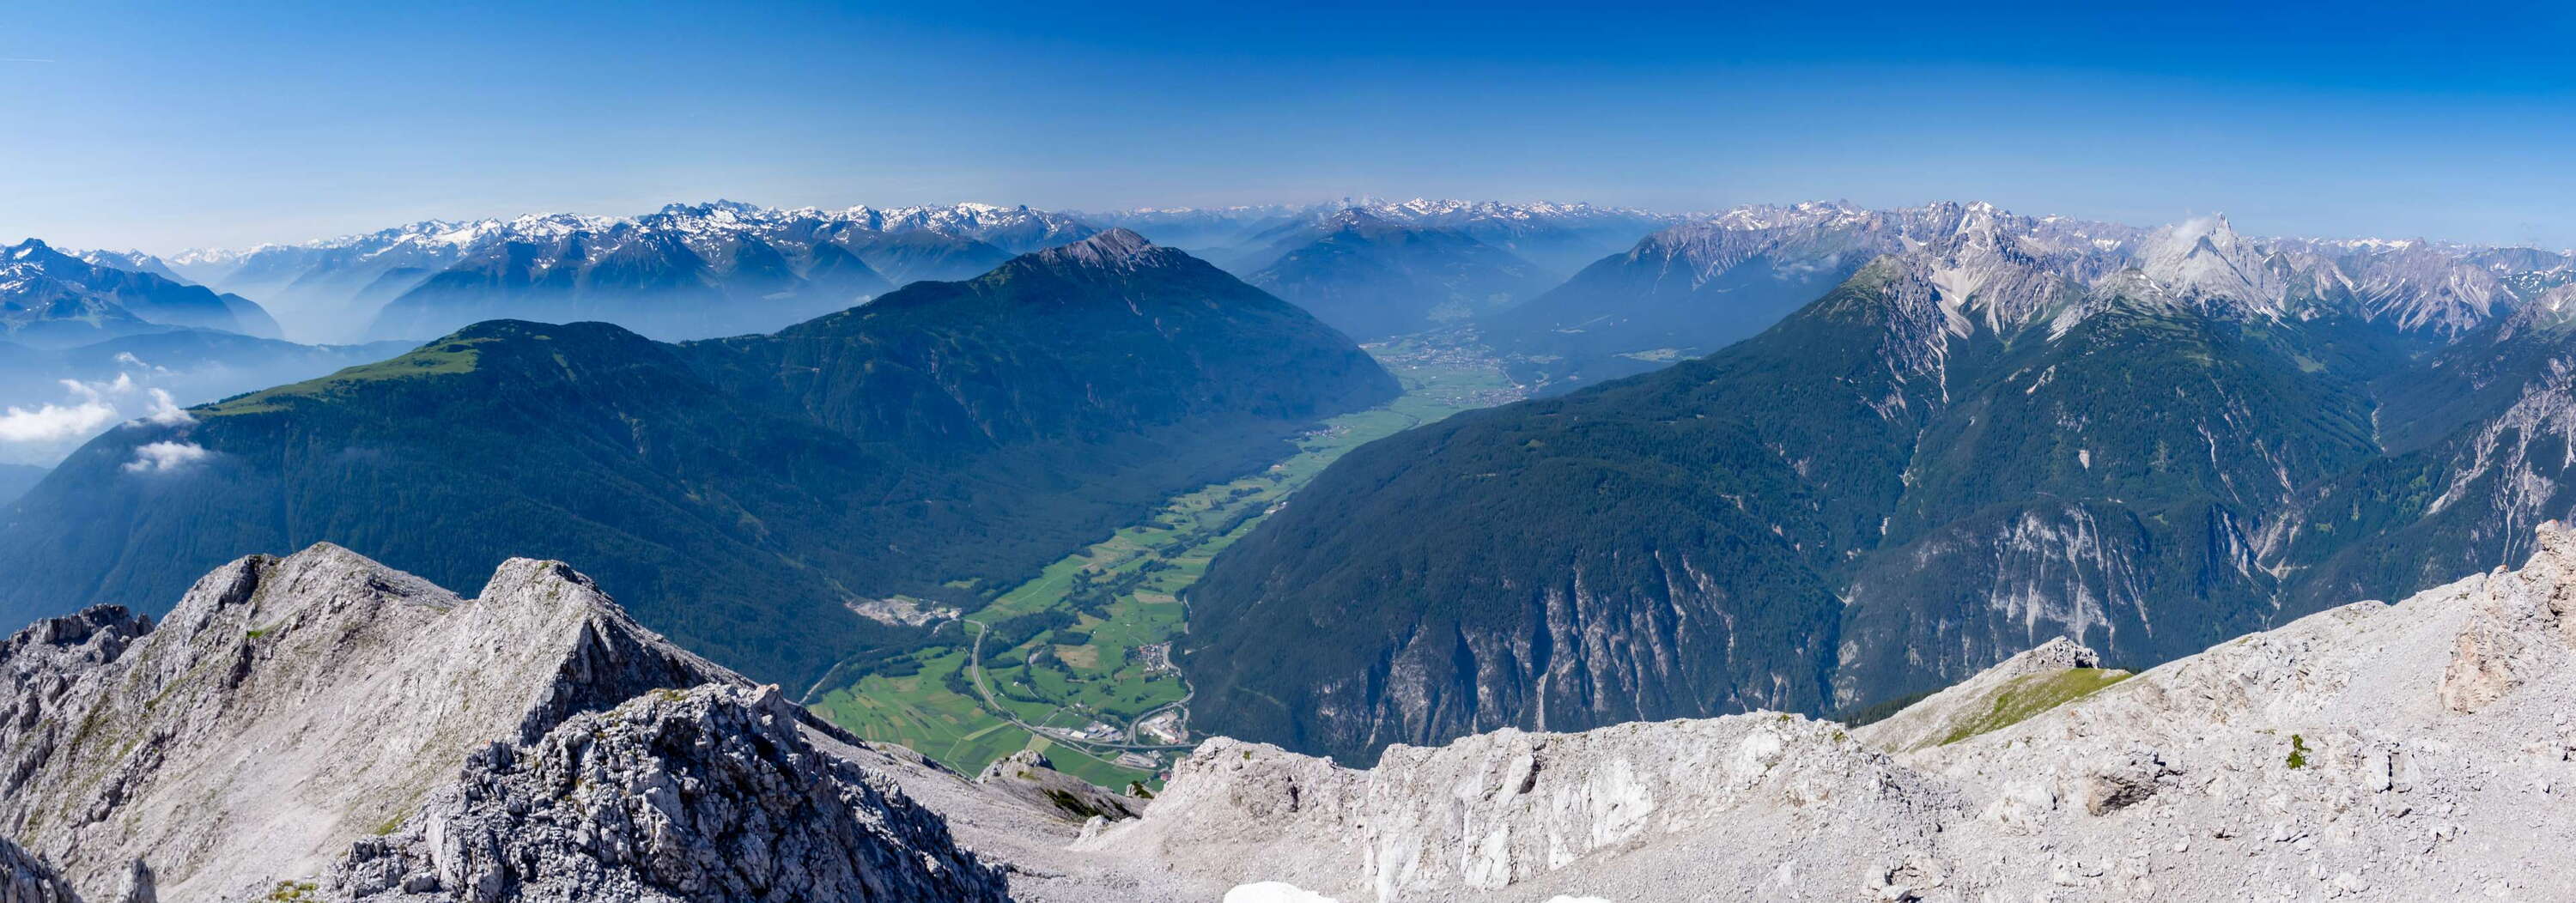 Tschirgant and Ötztaler Alpen panorama